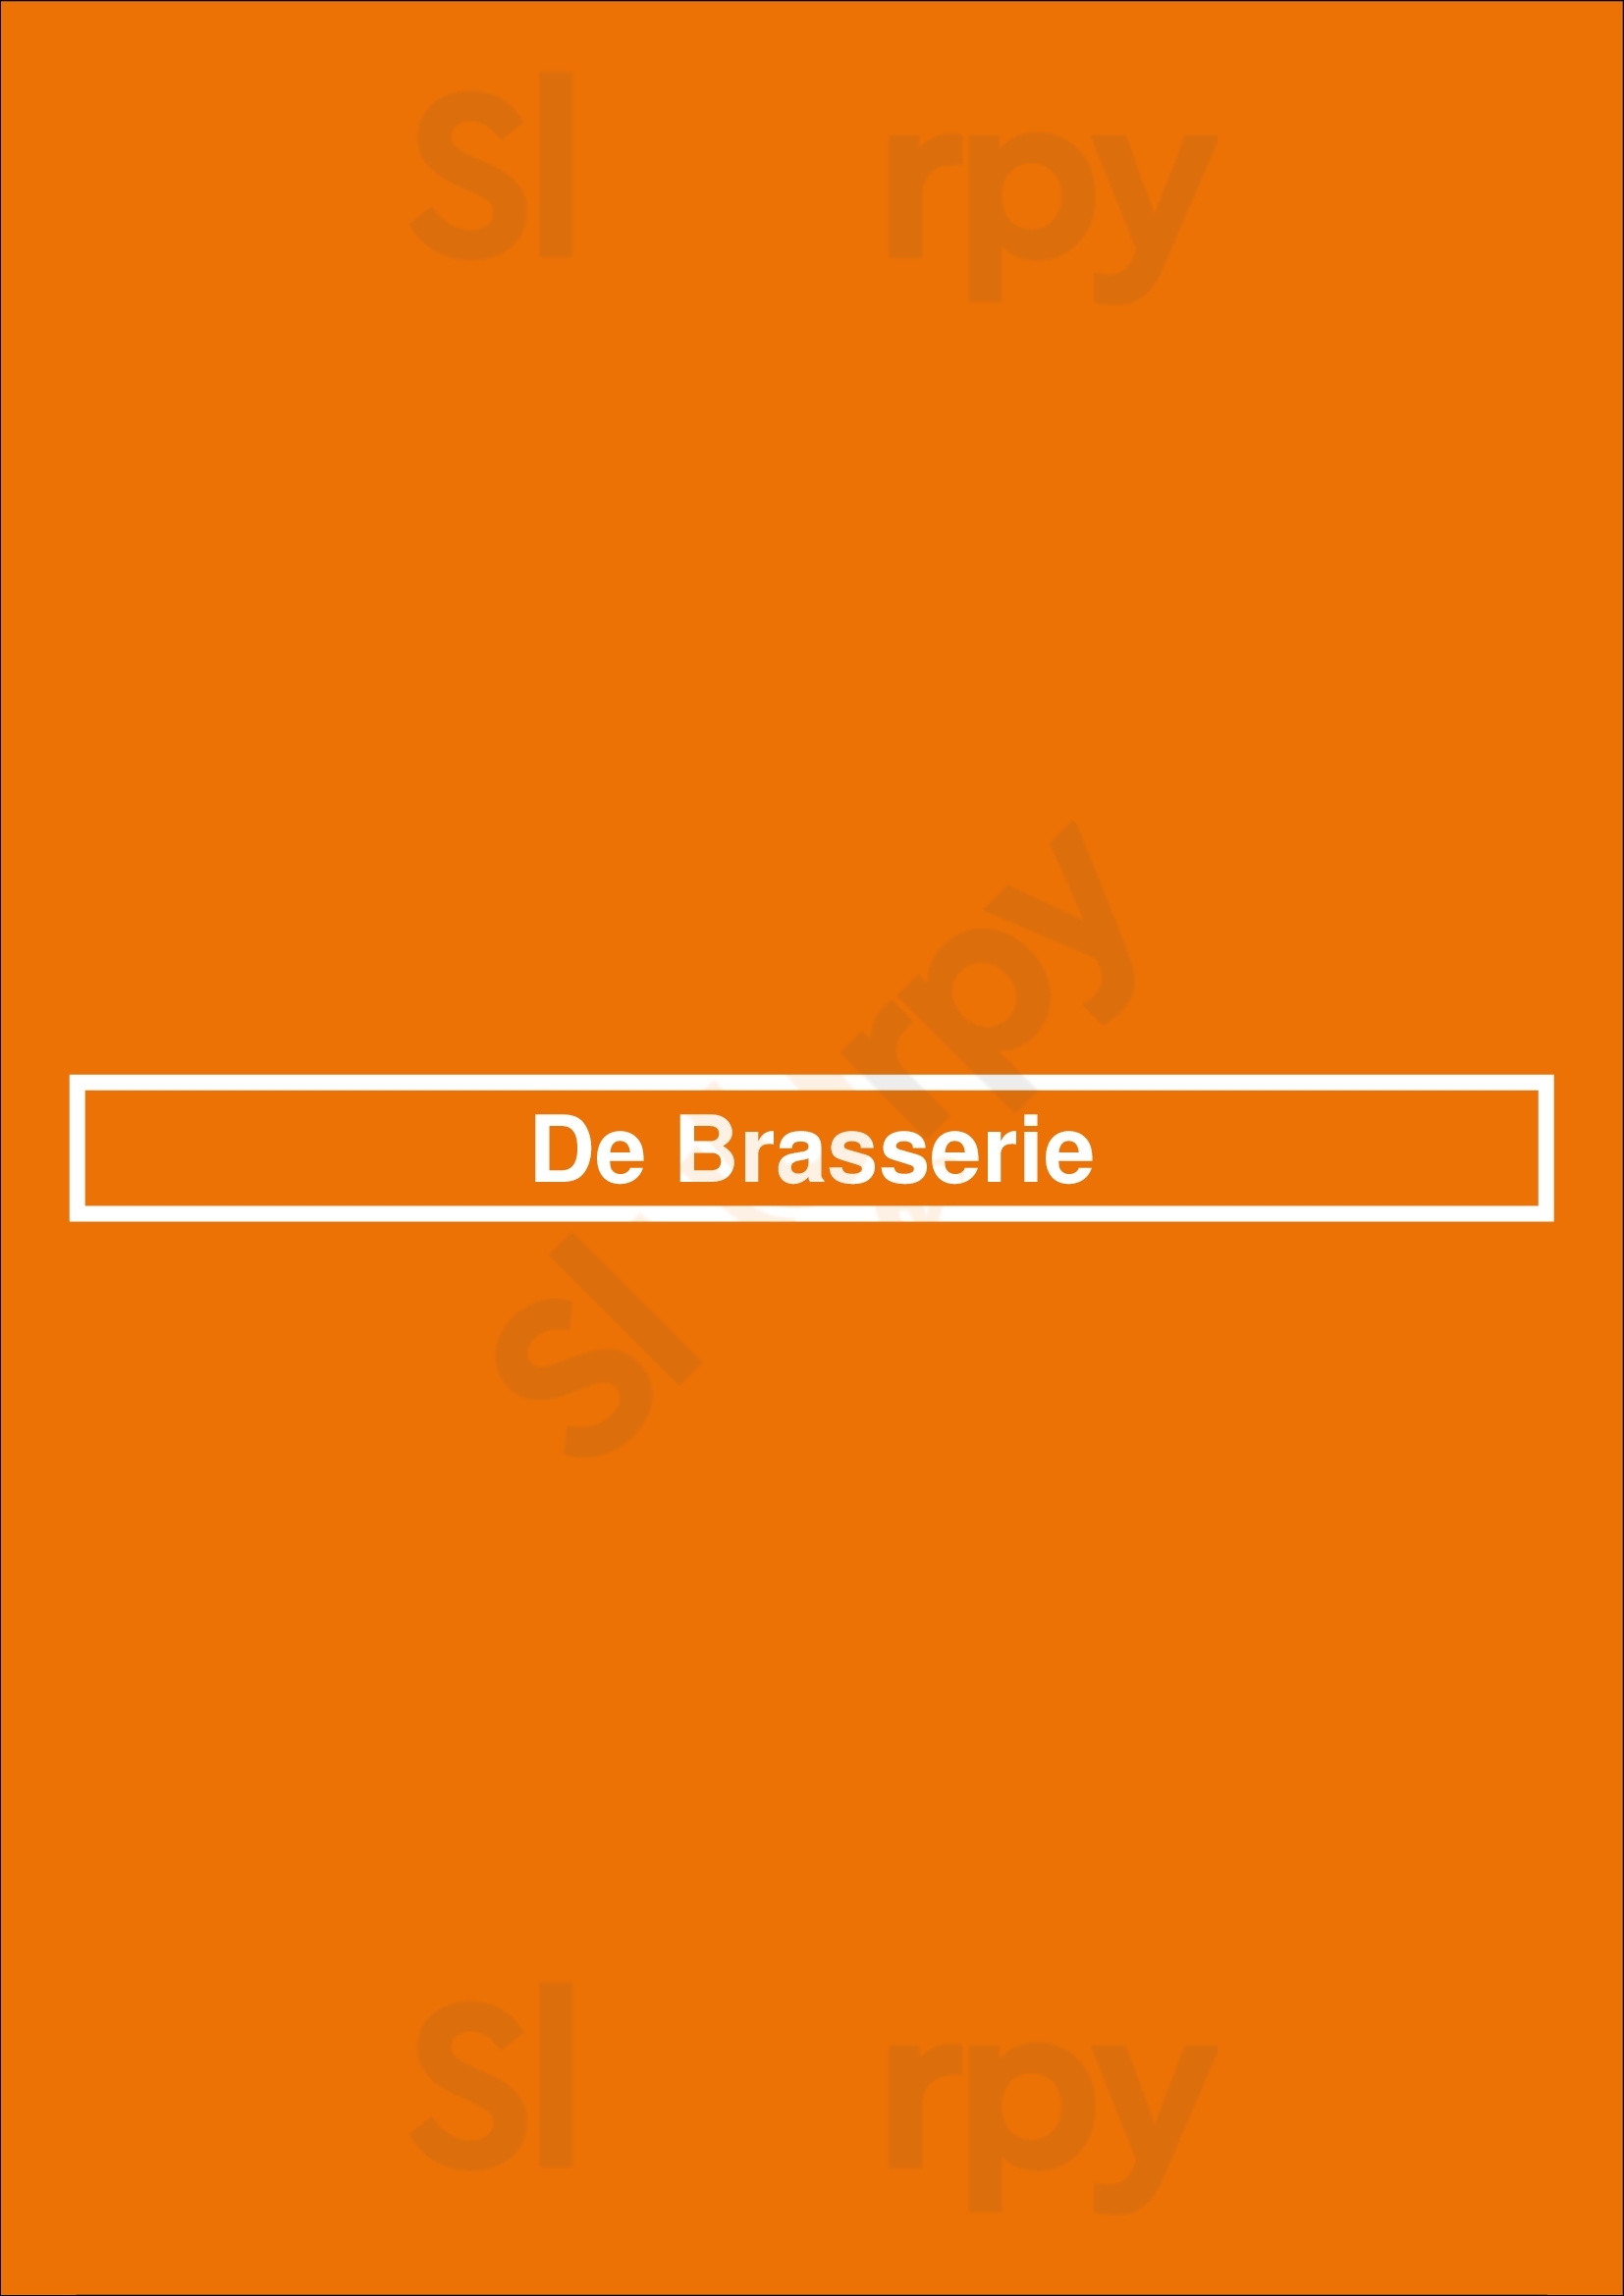 De Brasserie Amsterdam Menu - 1